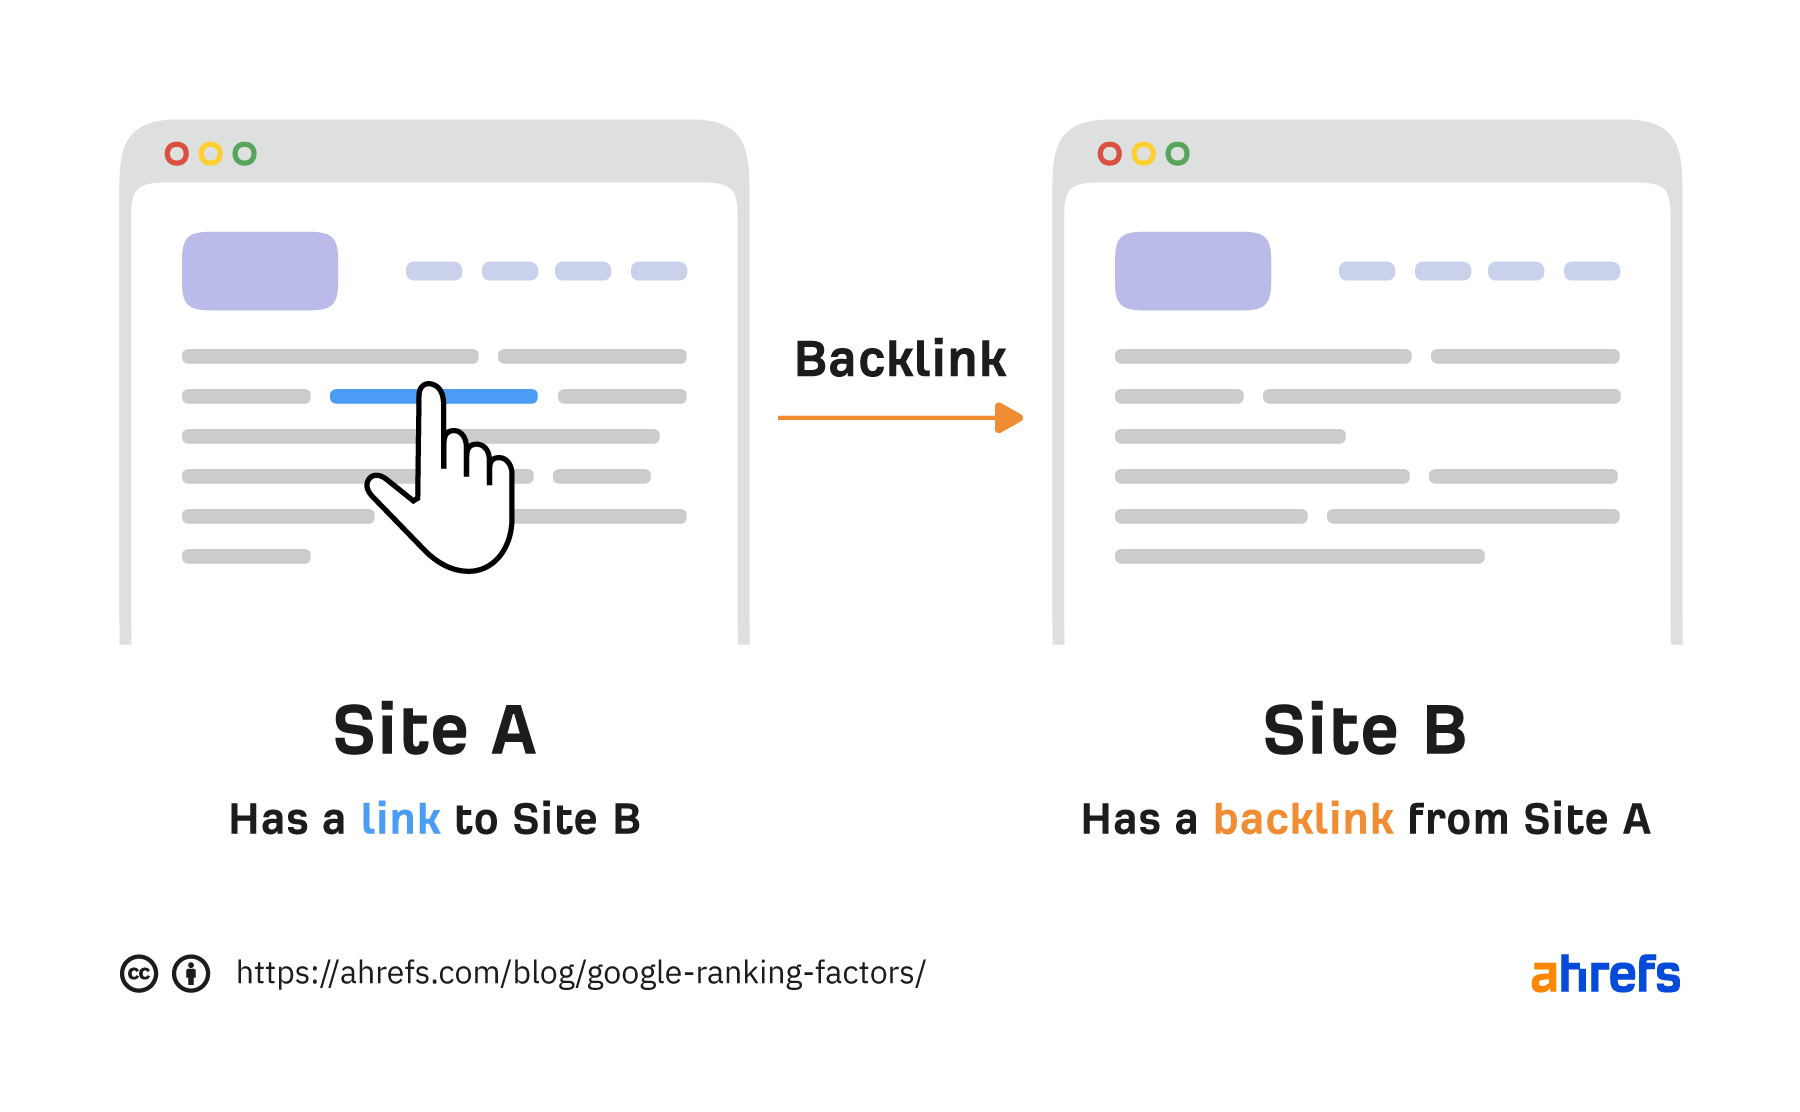 Les backlinks sont des liens cliquables d'un site à un autre